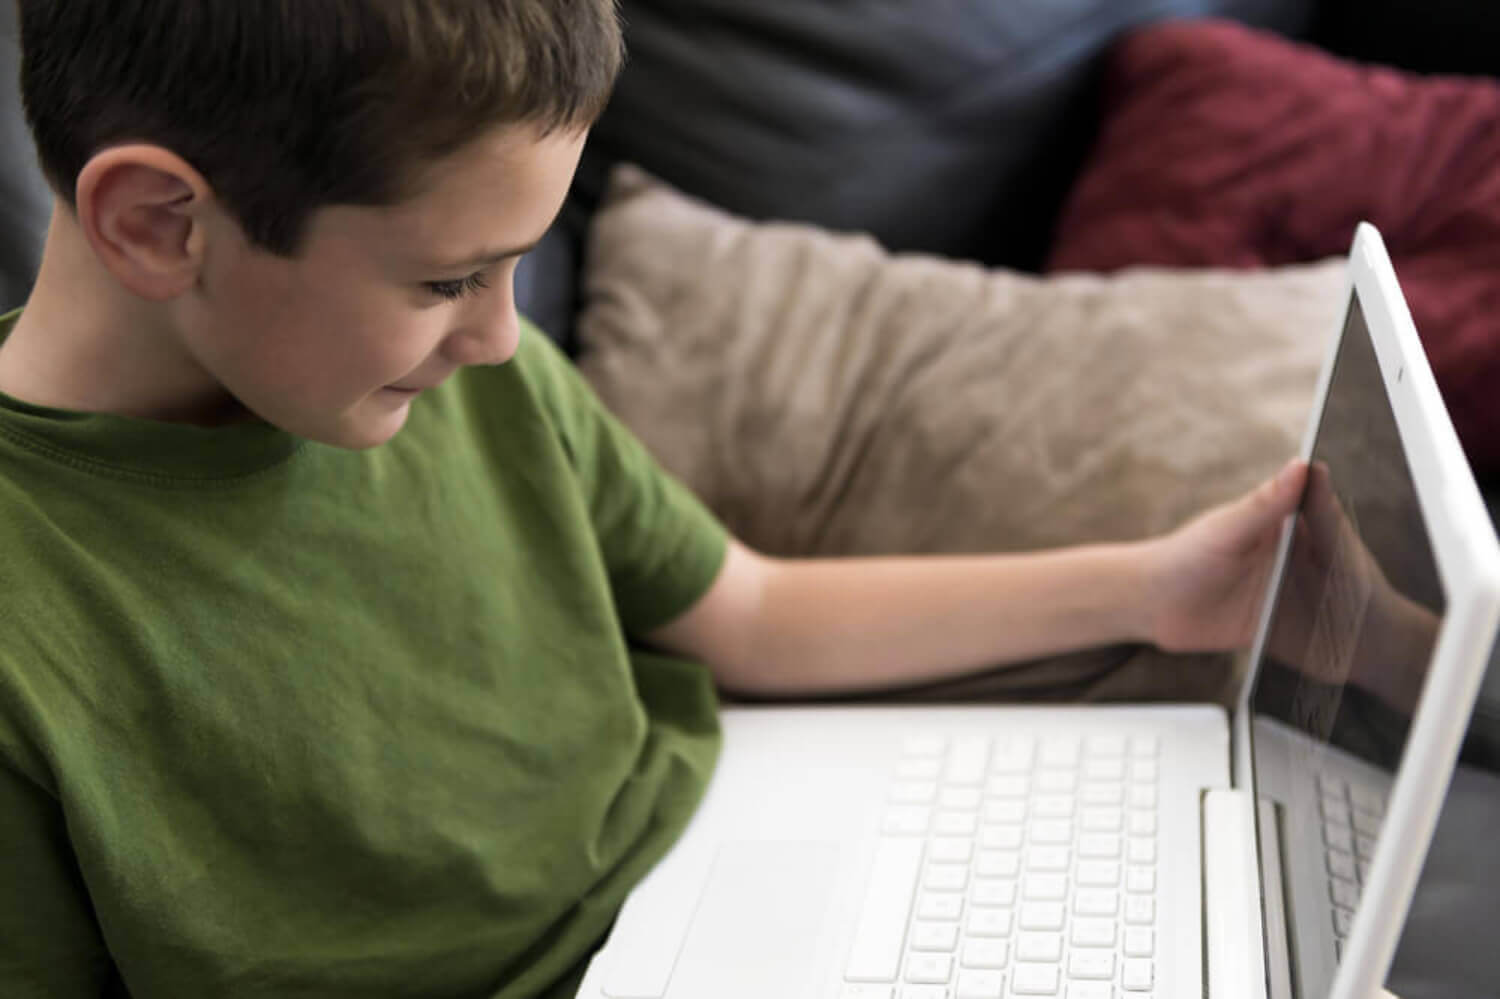 A boy on a laptop.